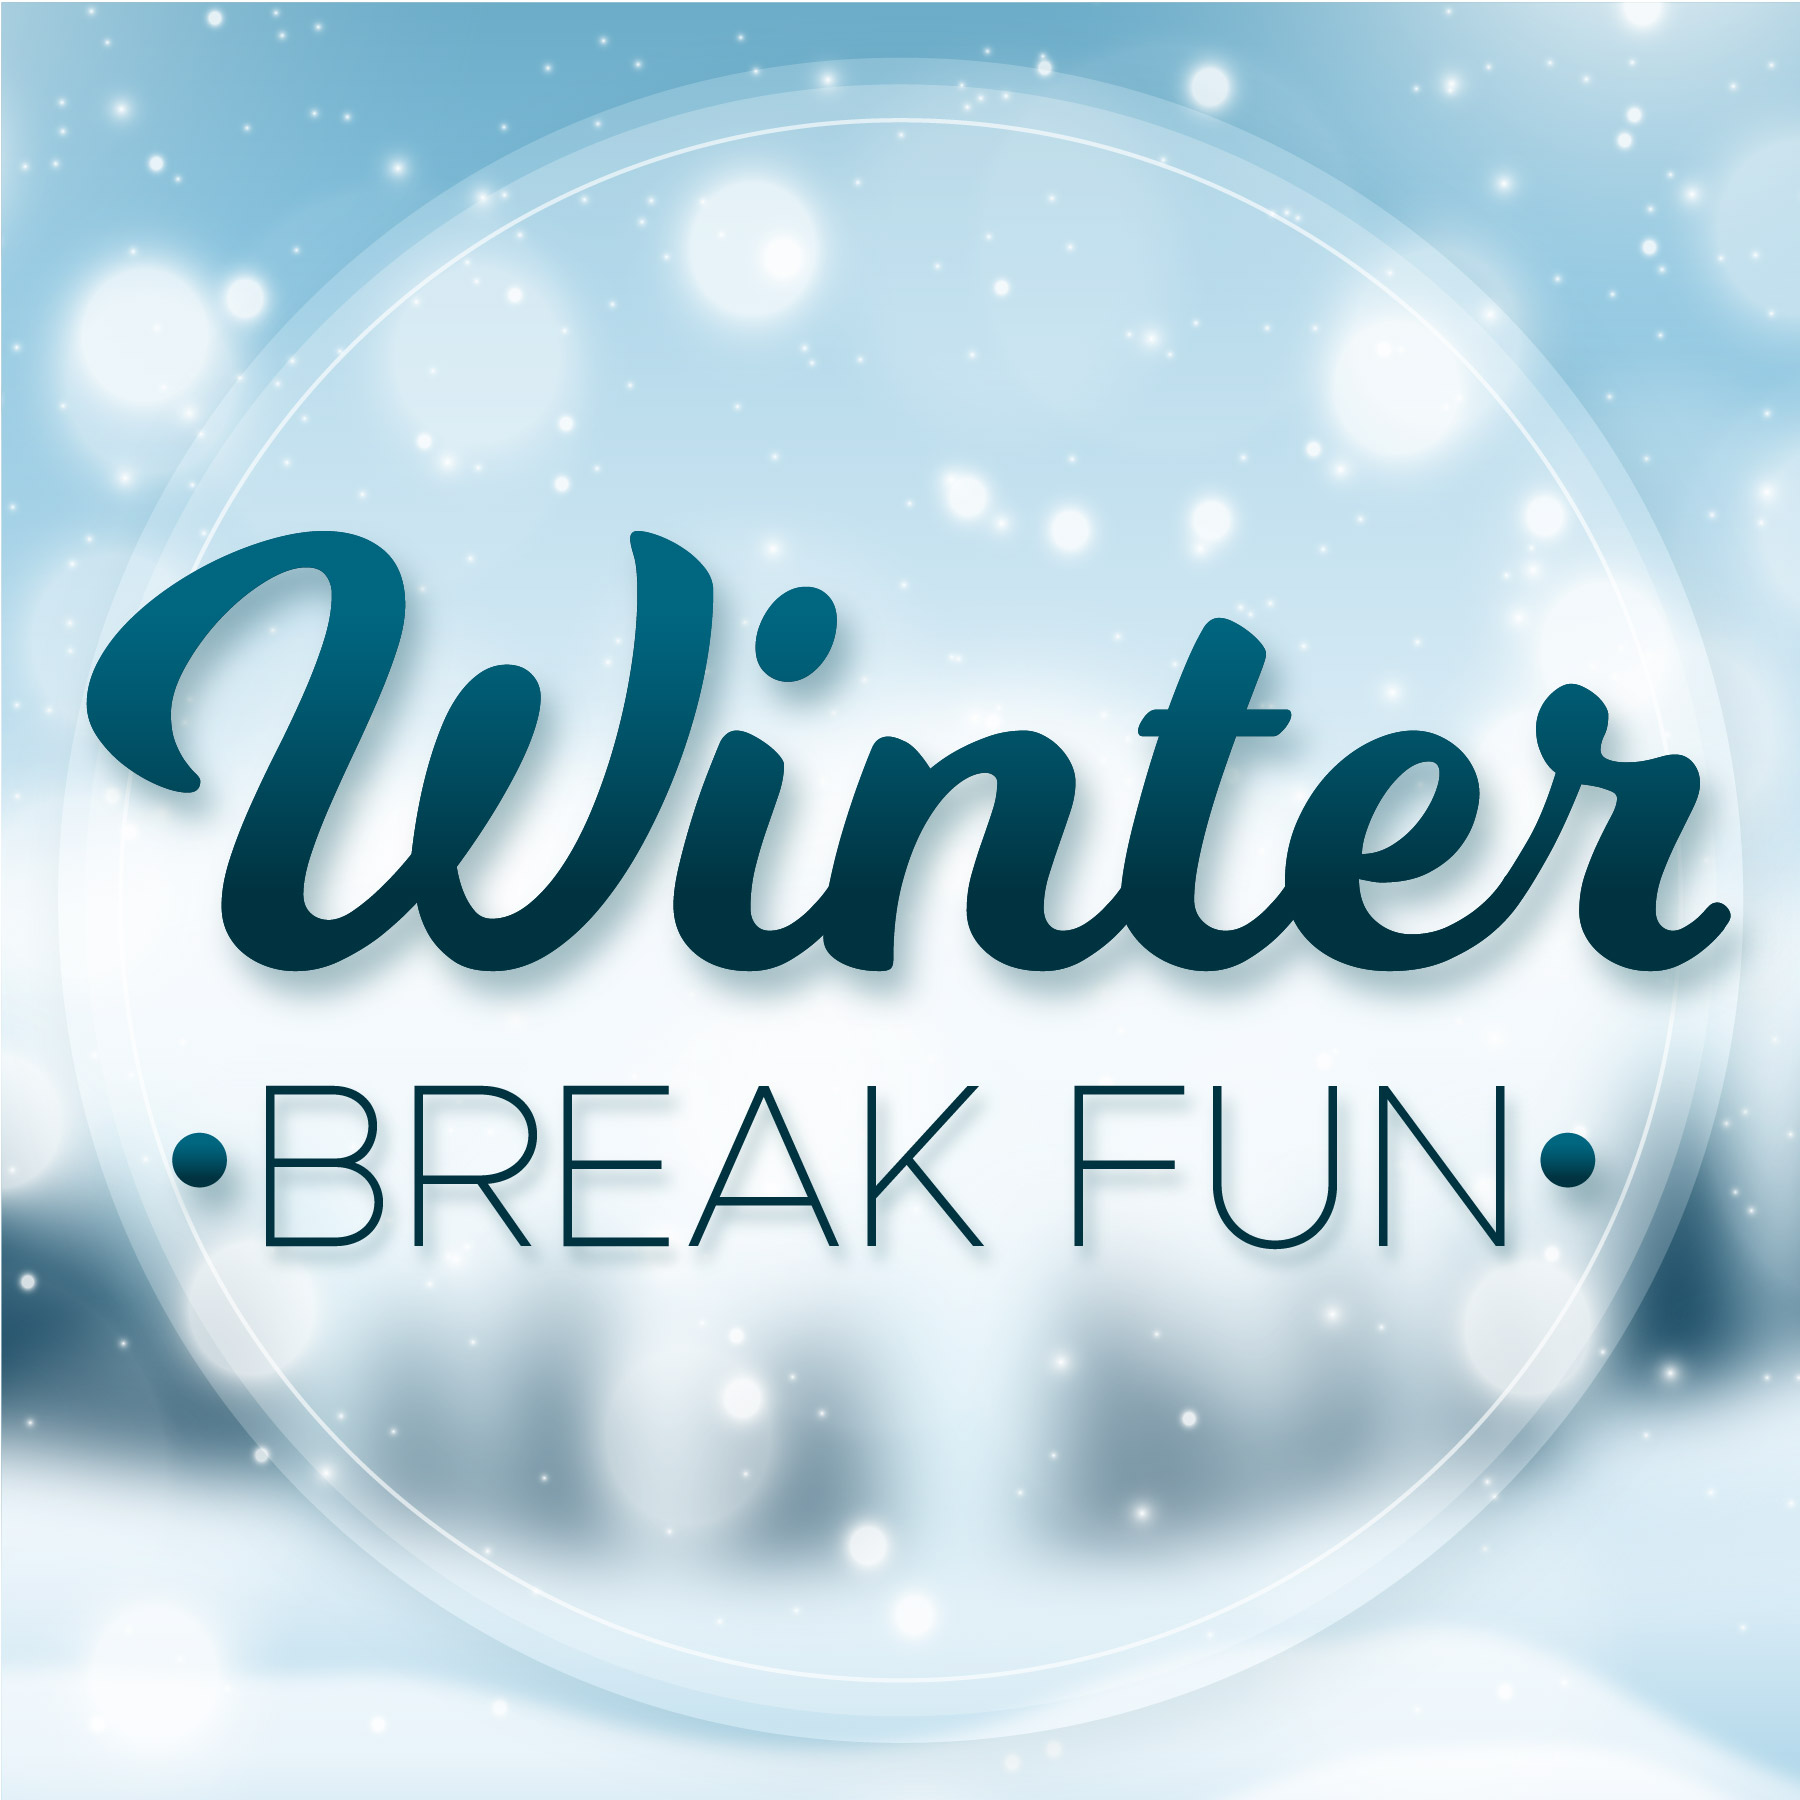 "Winter Break Fun" on snowy background